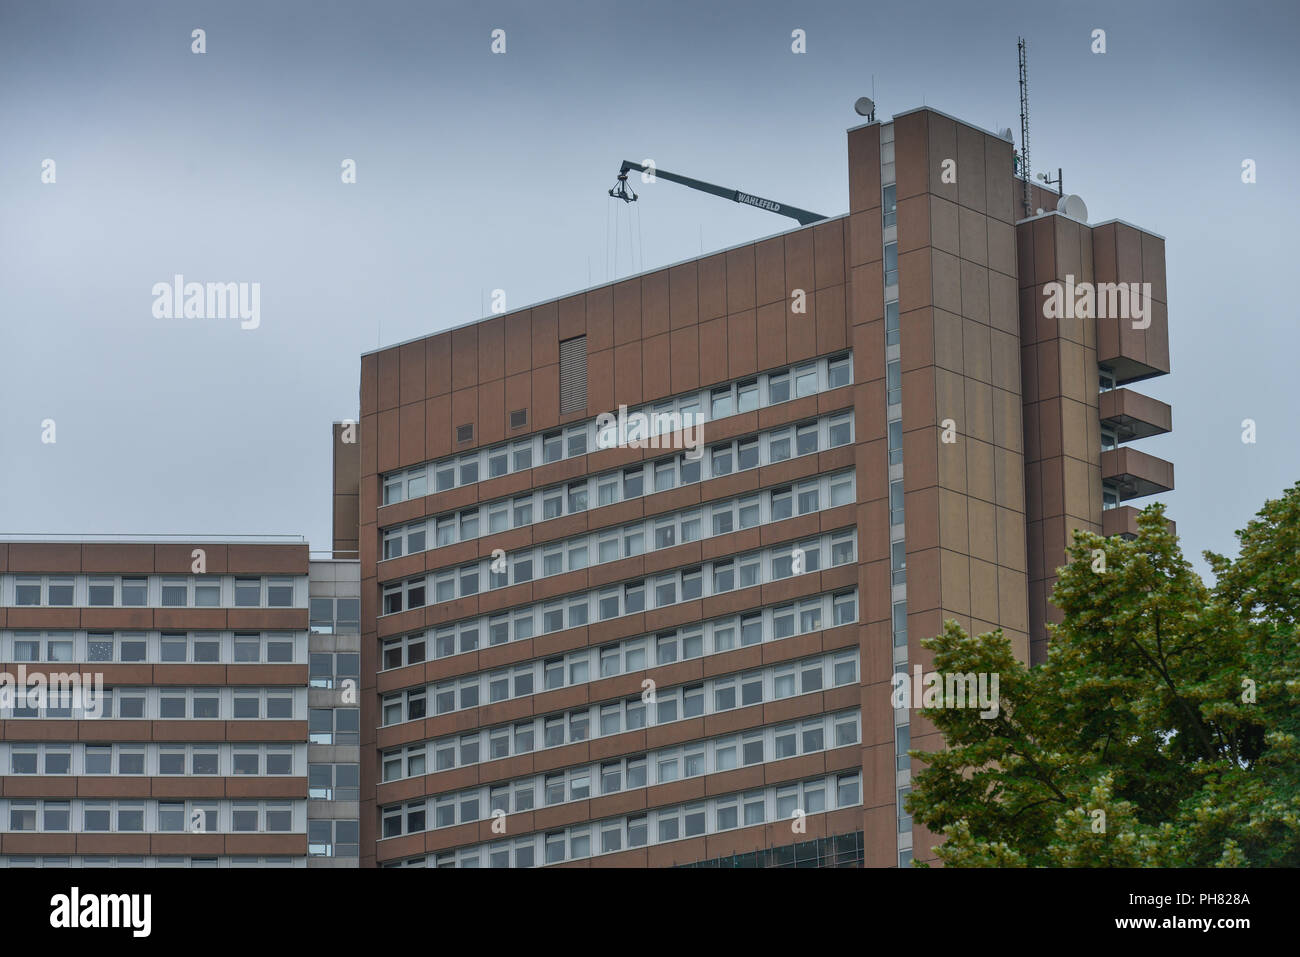 Justizzentrum, Luxemburger Strasse, Koeln, Nordrhein-Westfalen, Deutschland Stock Photo